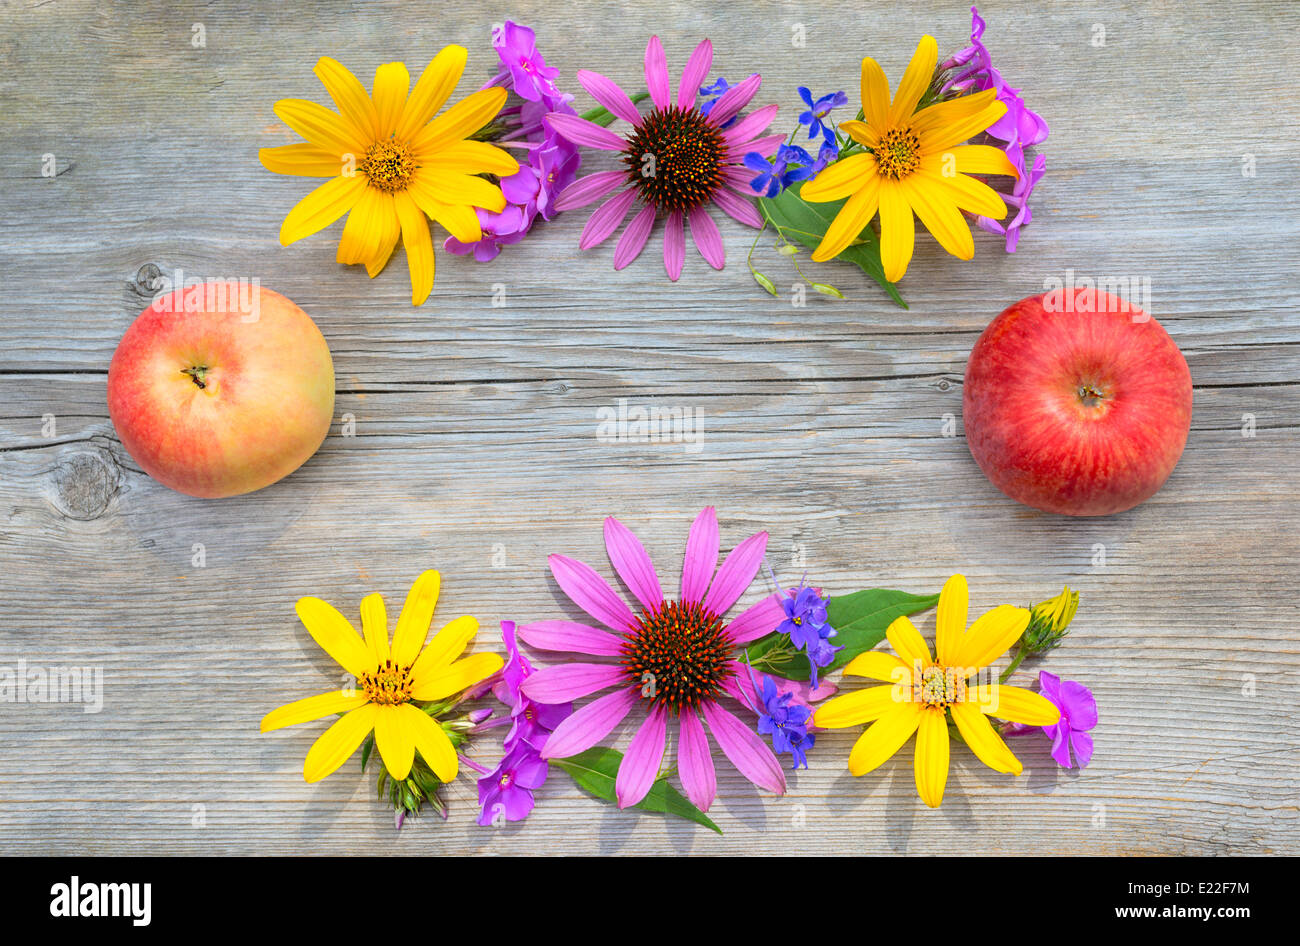 Blumenstrauß und Äpfel ist auf einem hölzernen Hintergrund einrahmen. Stockfoto